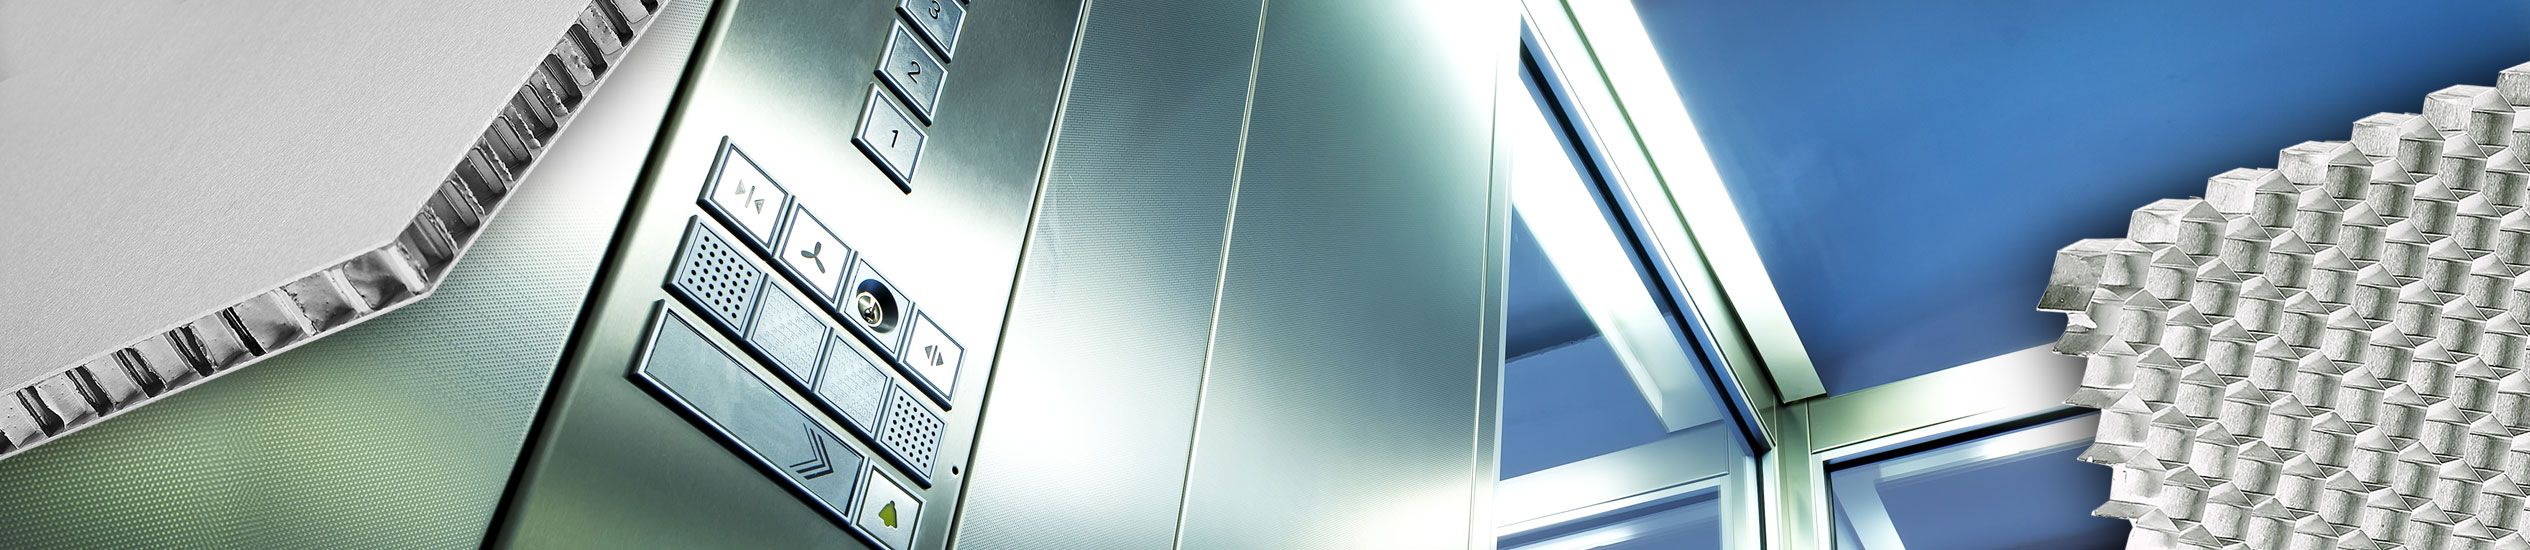 Se pueden construir cabinas y ascensores con materiales ultraligeros como paneles sándwich. Estéticamente refinado, con una amplia gama de acabados, CEL suminis